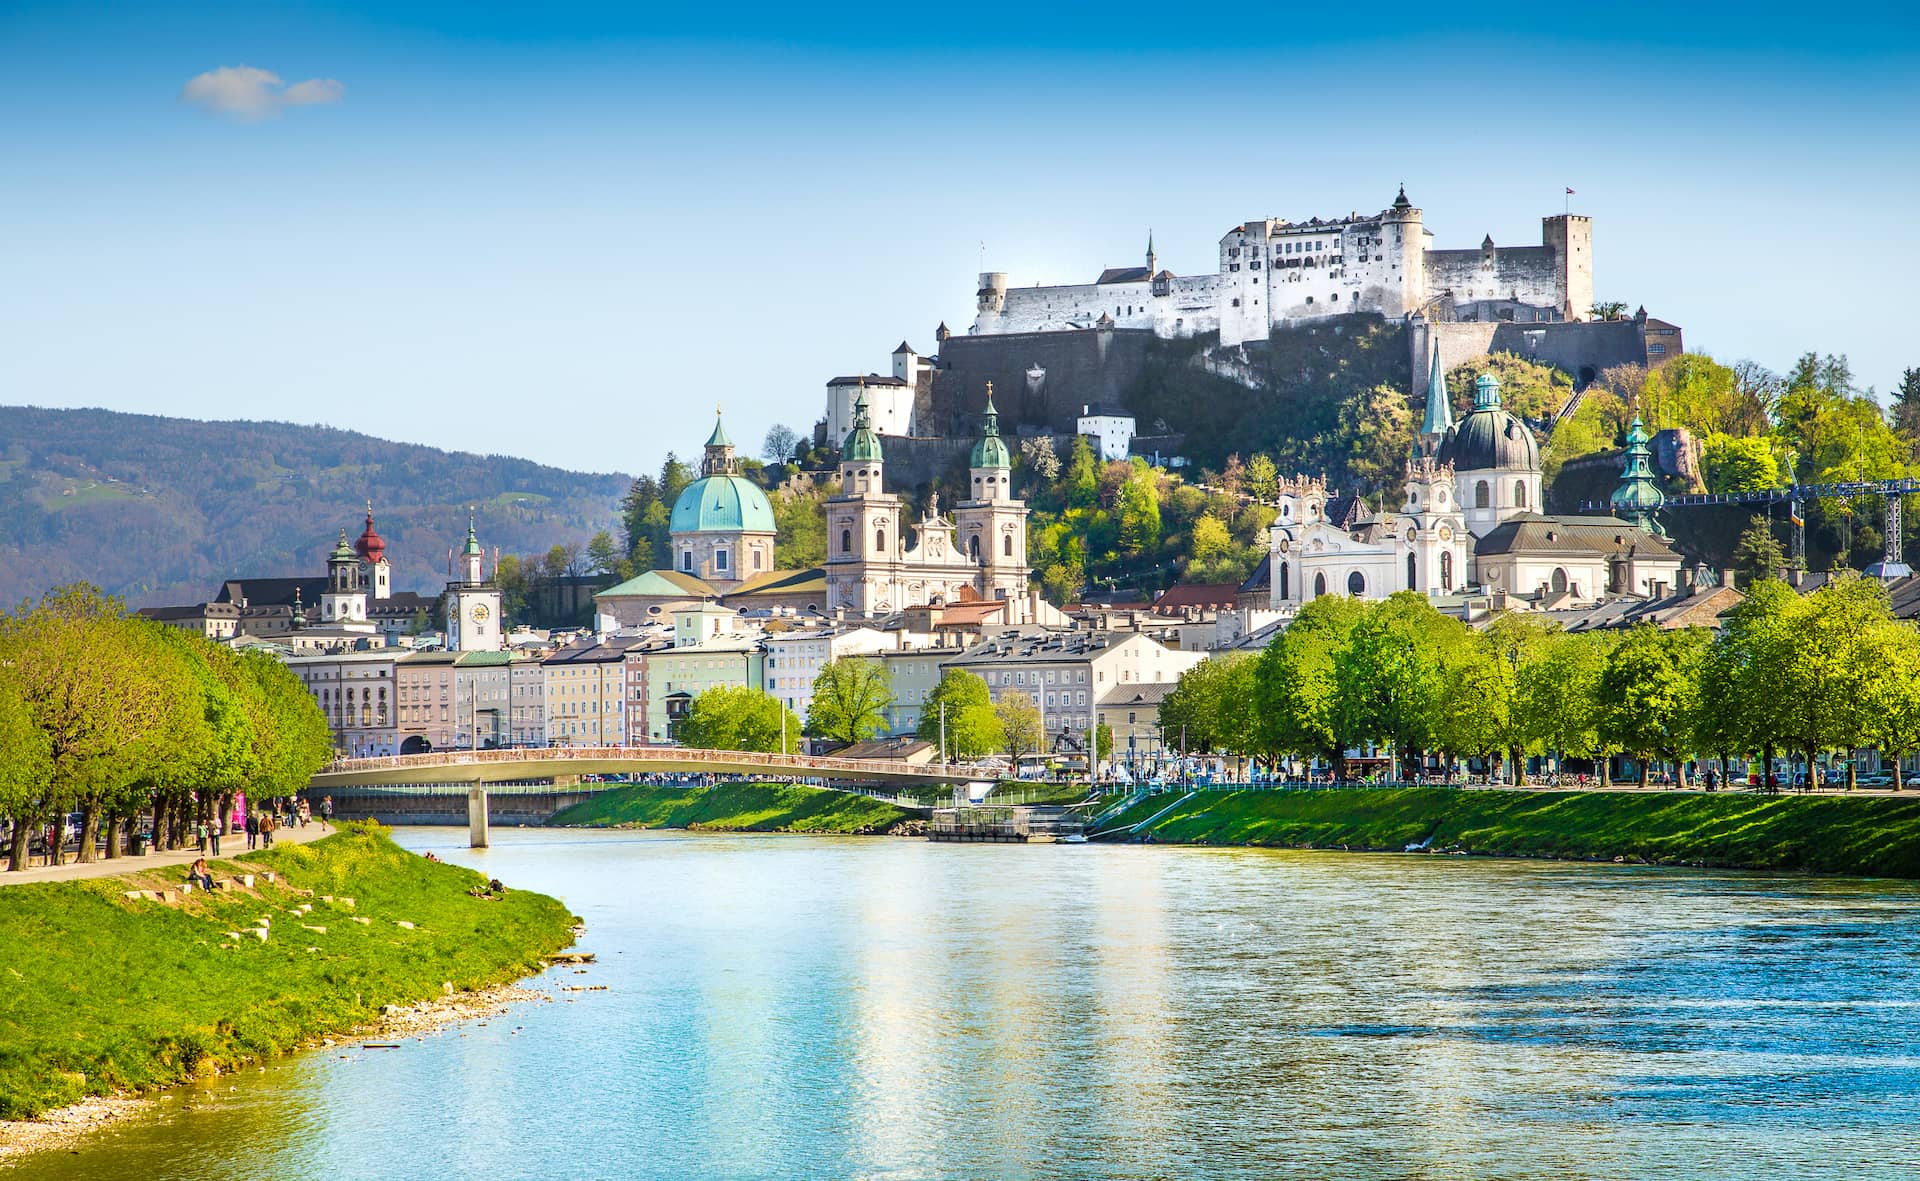 Bild von Salzburg Stadt mit Blick auf die Altstadt